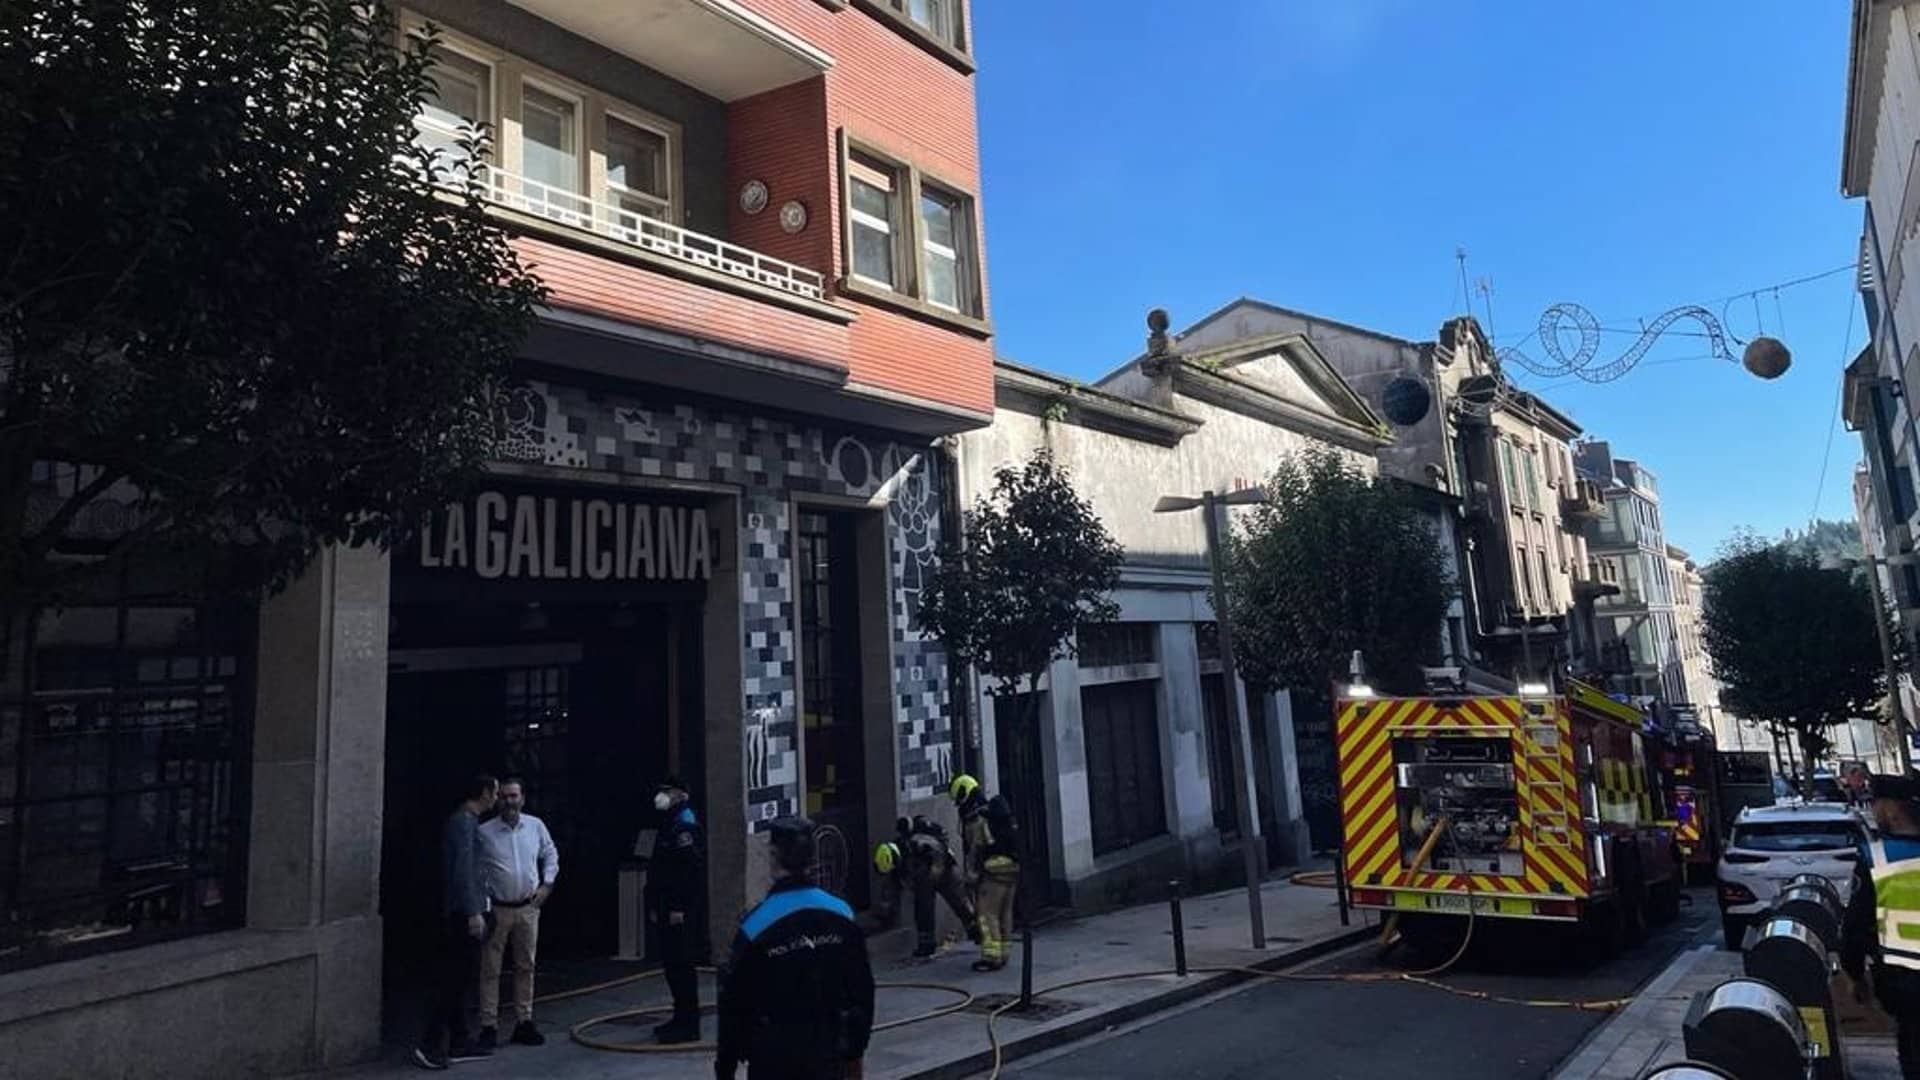 El incendio en la calle anexa al Mercado La Galiciana | EP